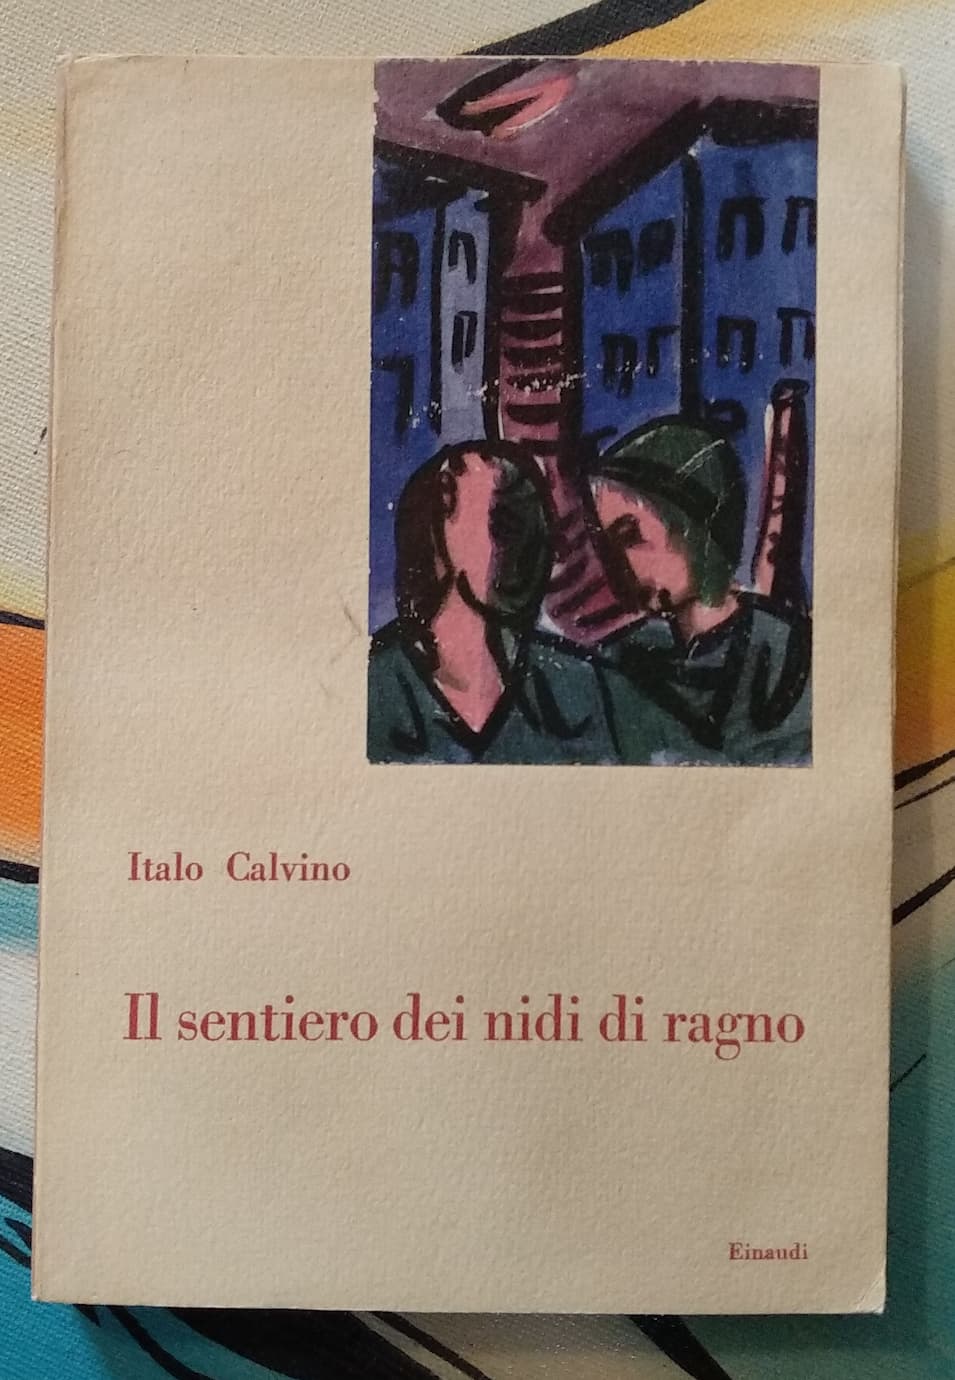 100 anni fa nasceva Italo Calvino: a caccia della prima edizione de “Il sentiero dei nidi di ragno” (1947)